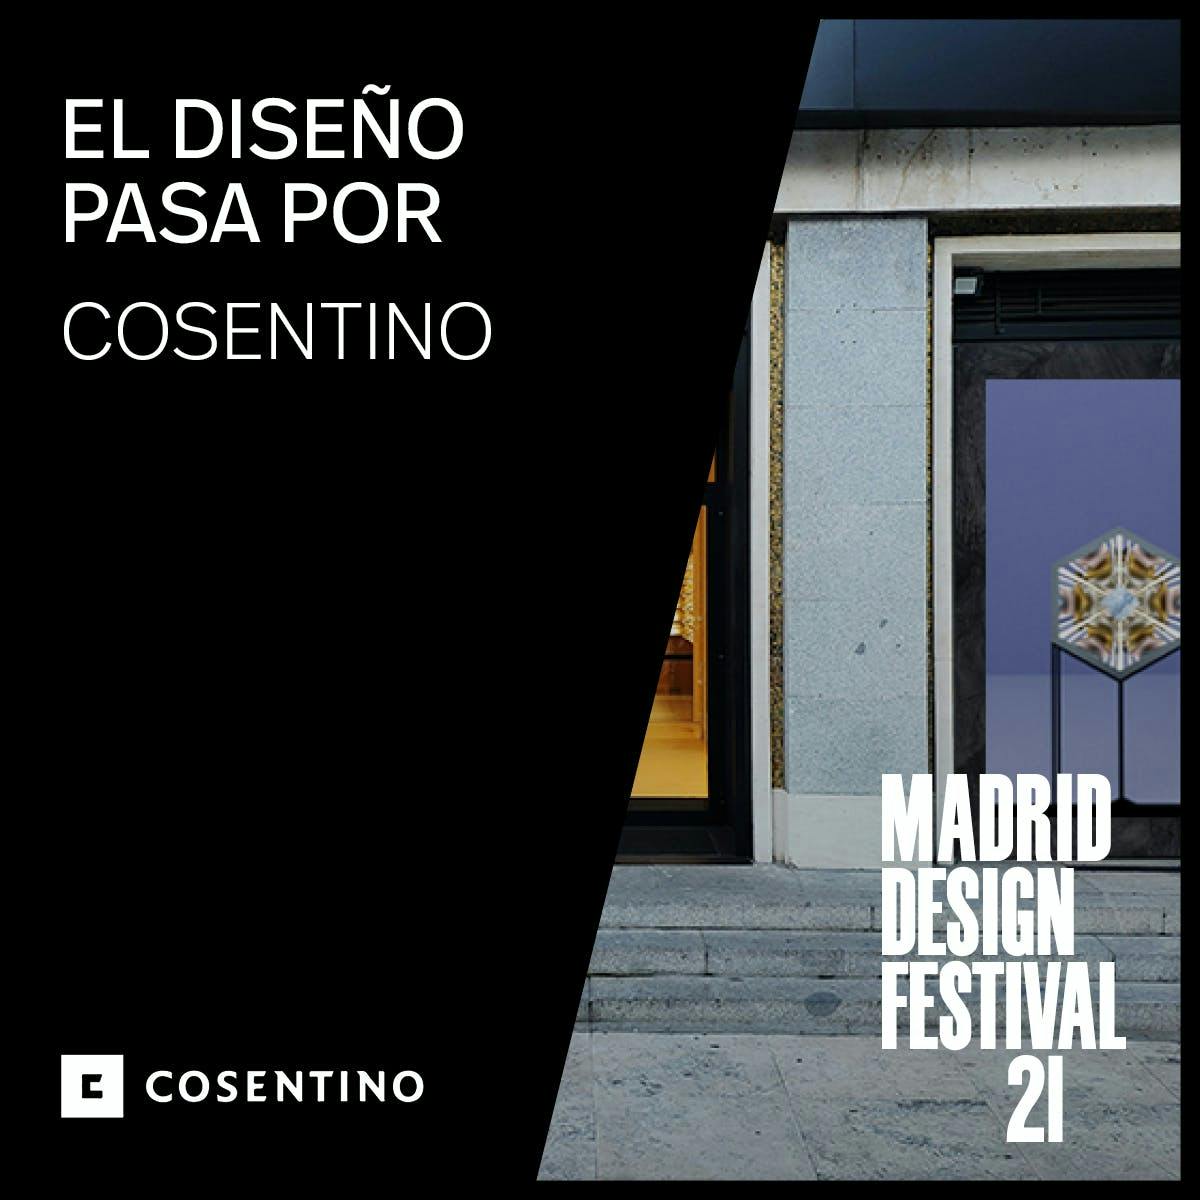 Image 32 of MDPartner COSENTINO1 1 6.jpg?auto=format%2Ccompress&ixlib=php 3.3 in Cosentino at the Madrid Design Festival 2021 - Cosentino